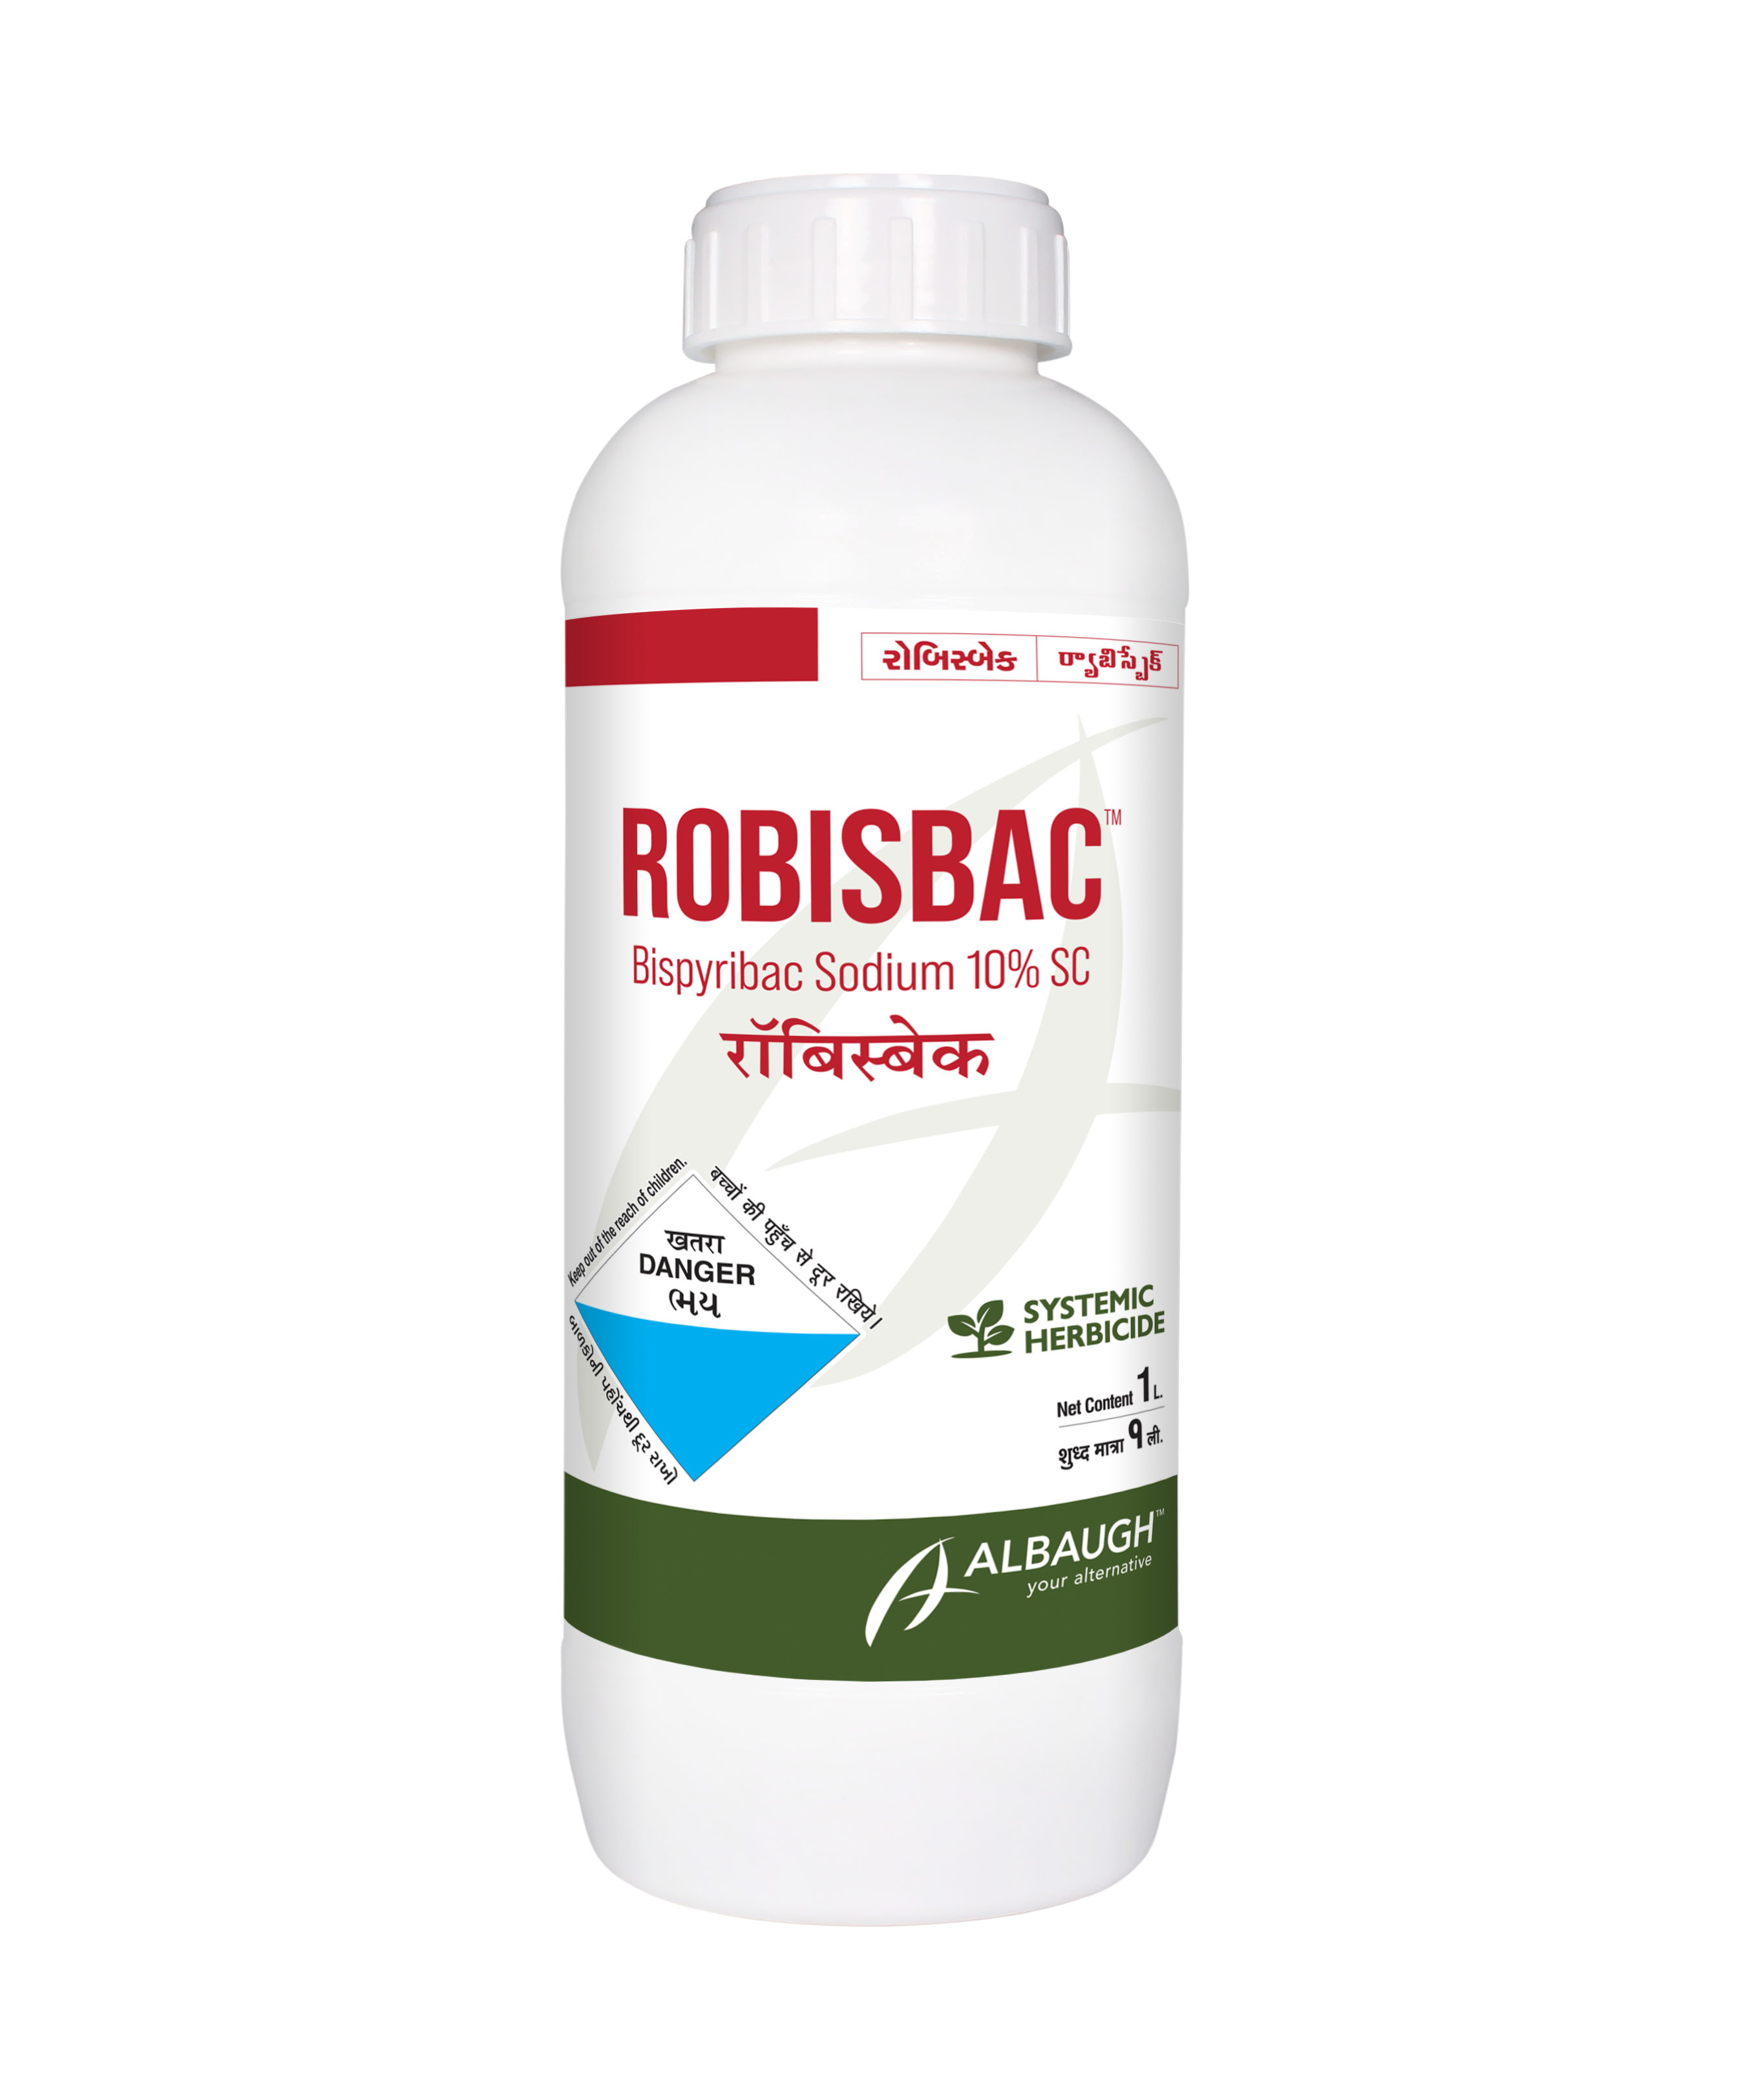 Robisbac: Bispyribac Sodium 10% SC